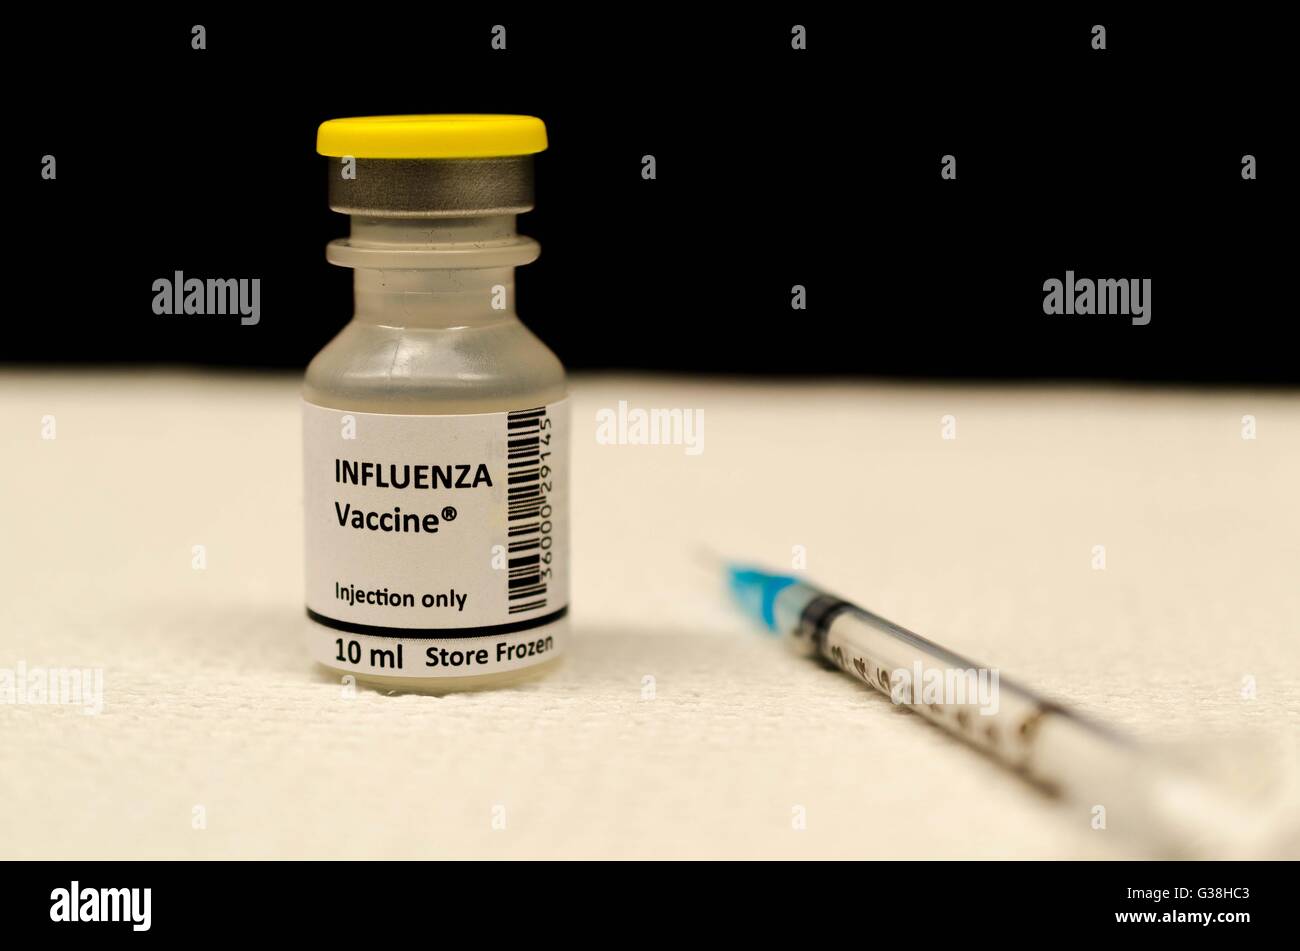 Flu shot and influenza vaccine Stock Photo